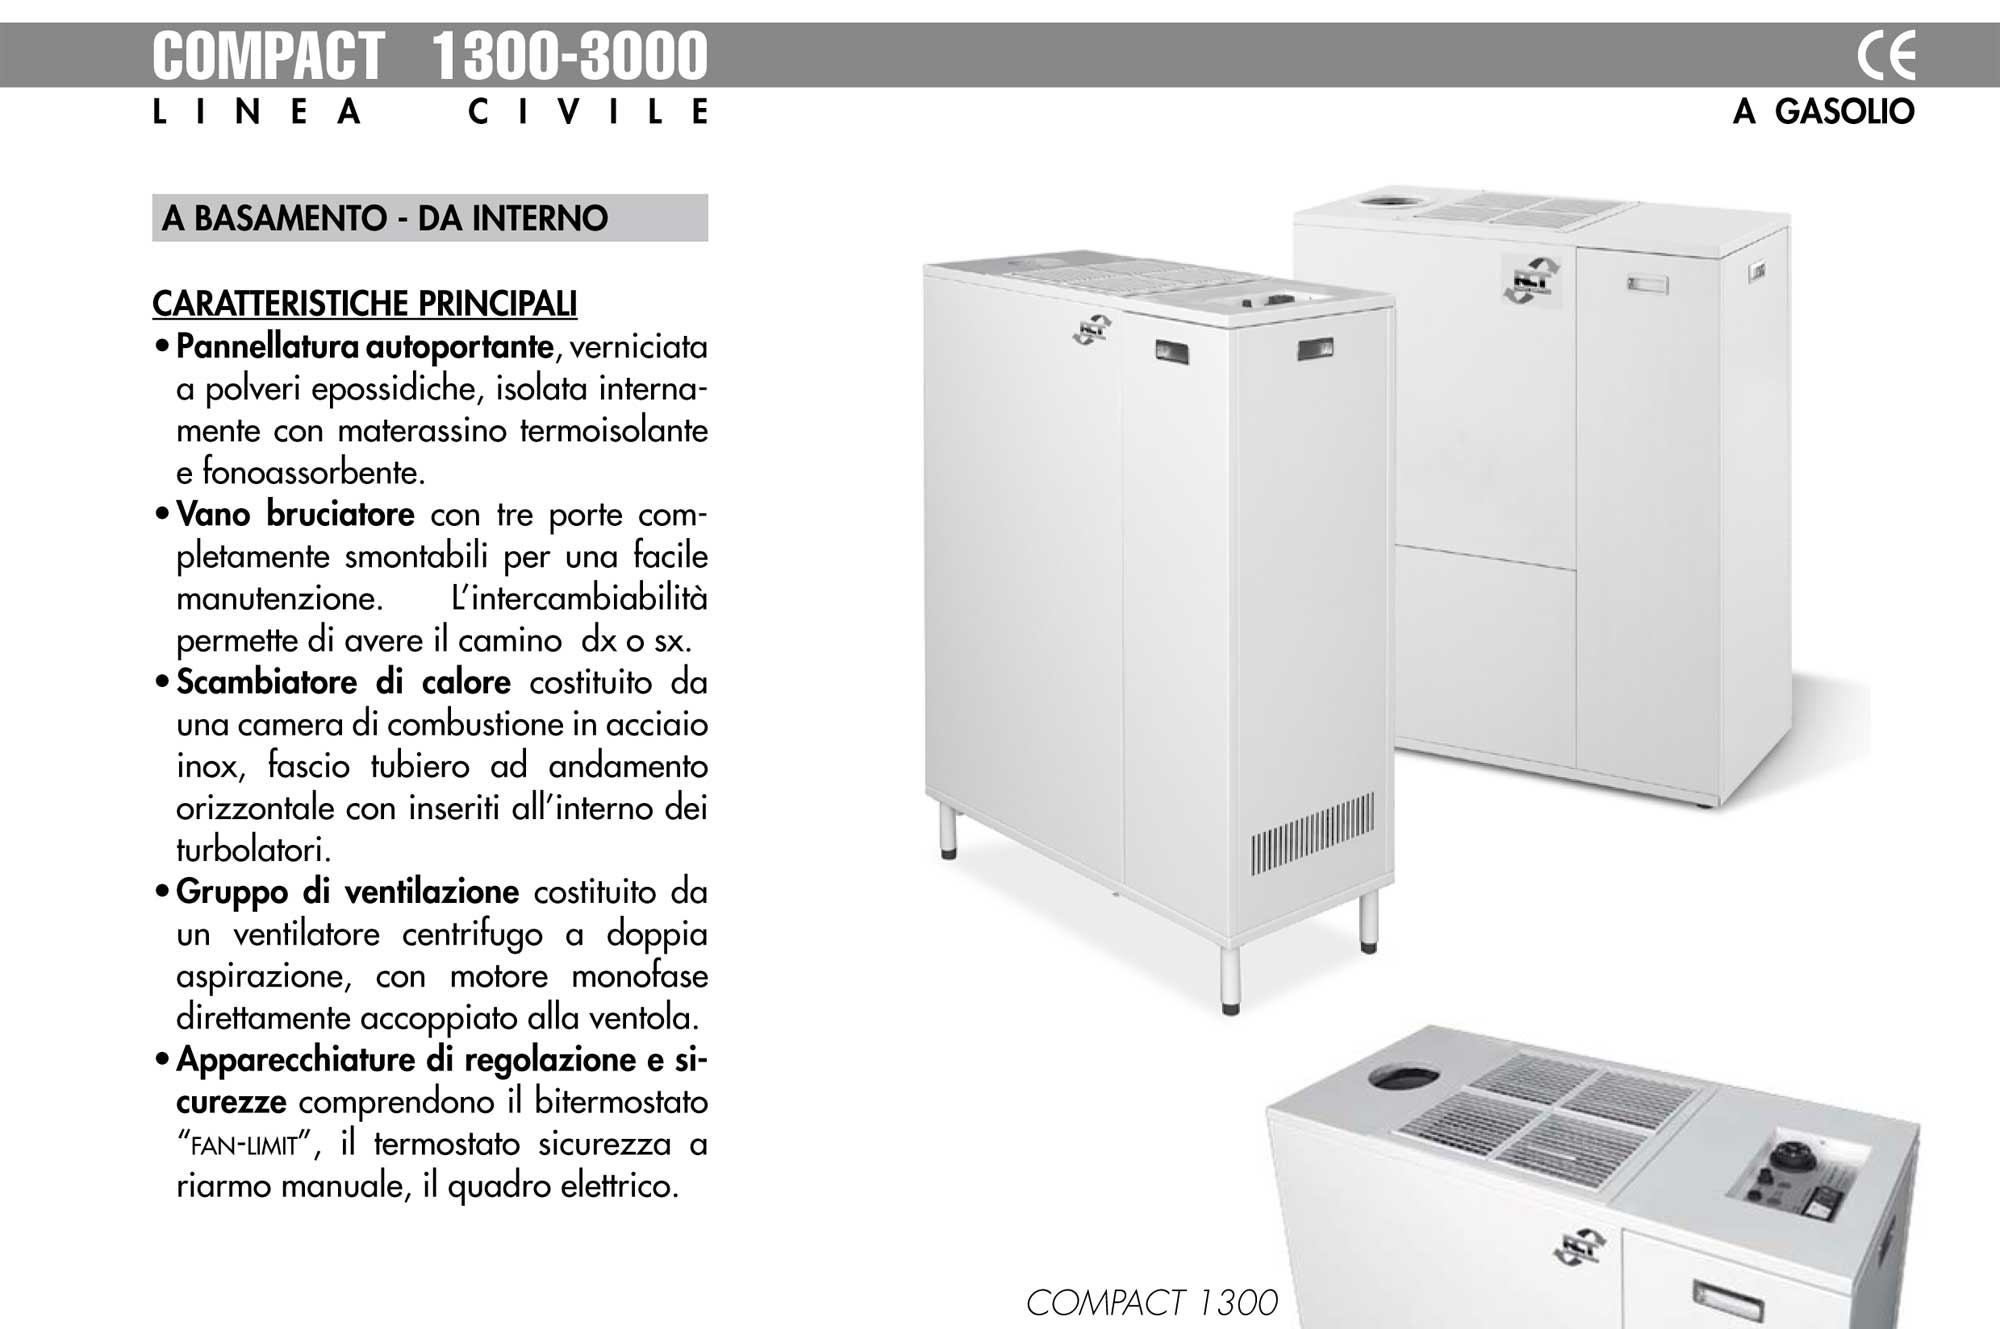 Generatori aria calda civile COMPACT 1300-3000